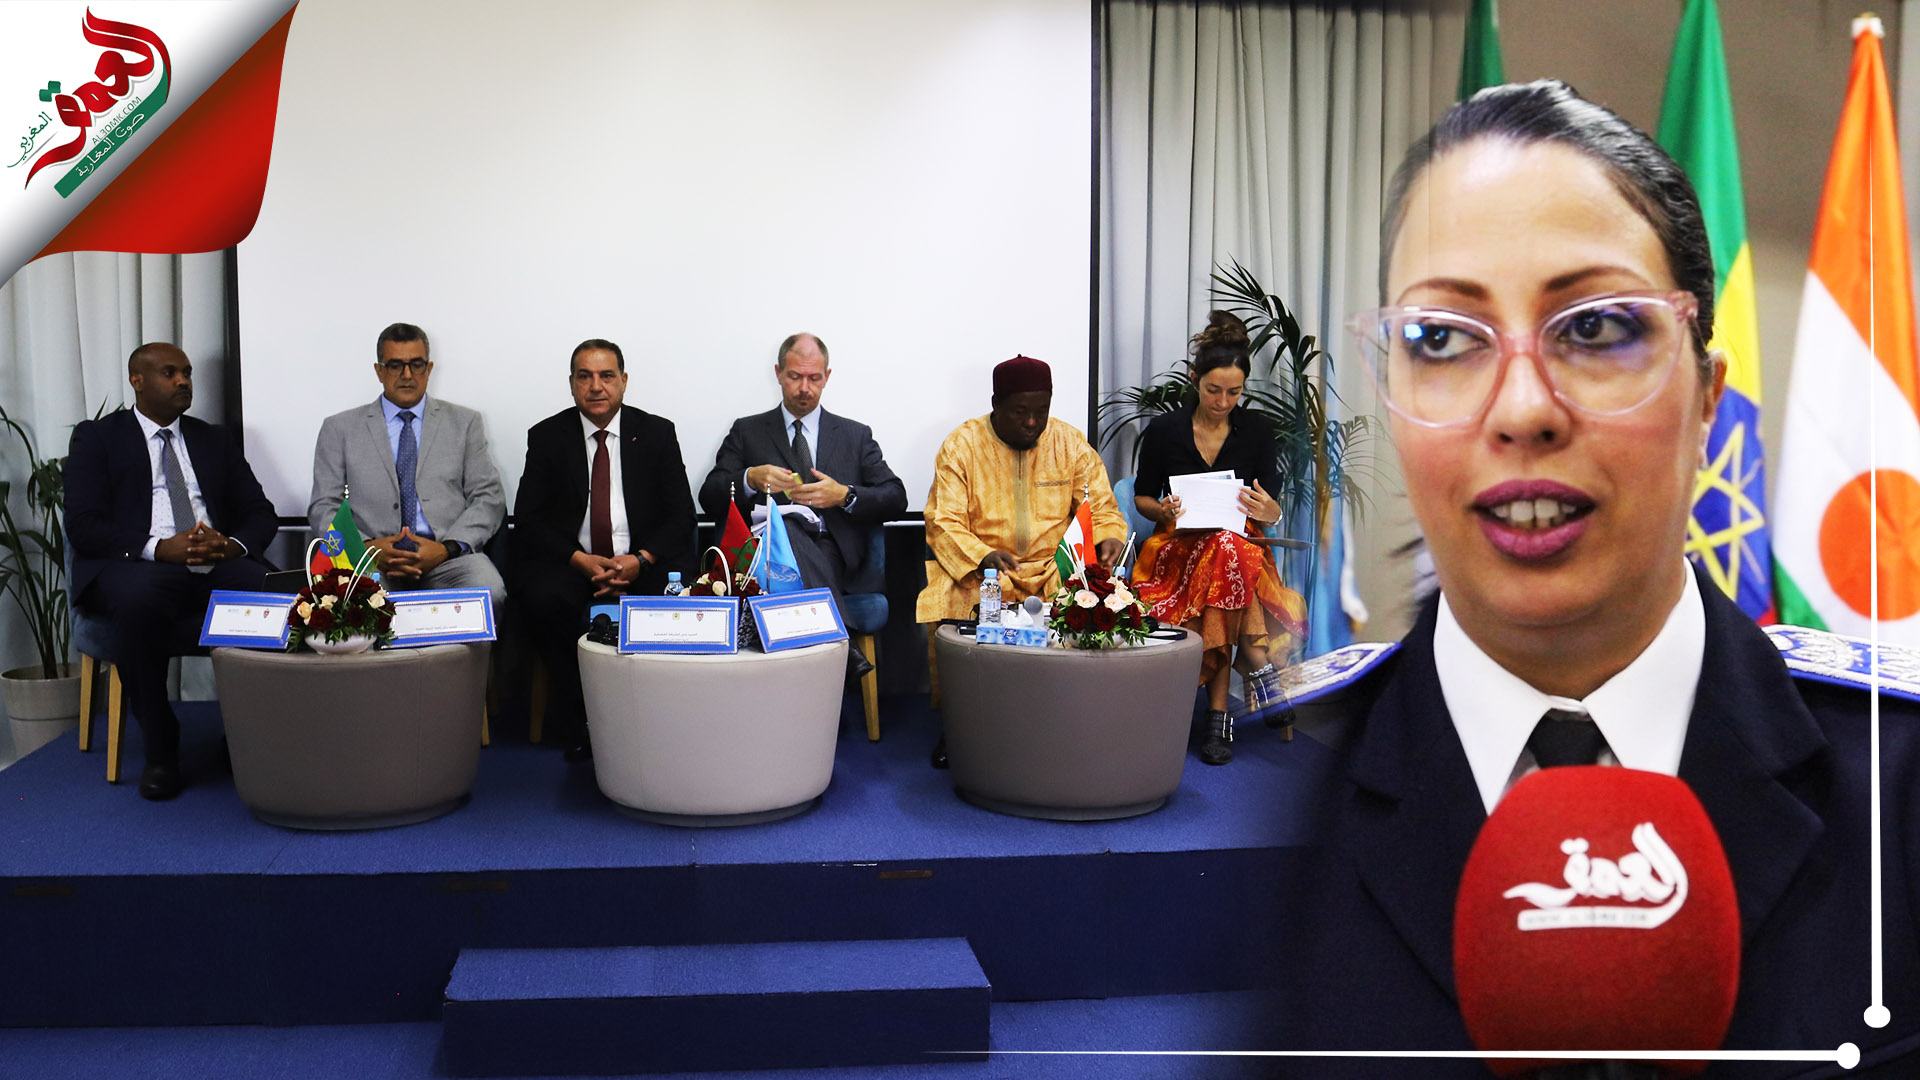 المغرب ينظم محاكمة صورية مع النيجر وإثيوبيا حول الاتجار بالبشر وتهريب المهاجرين (فيديو)